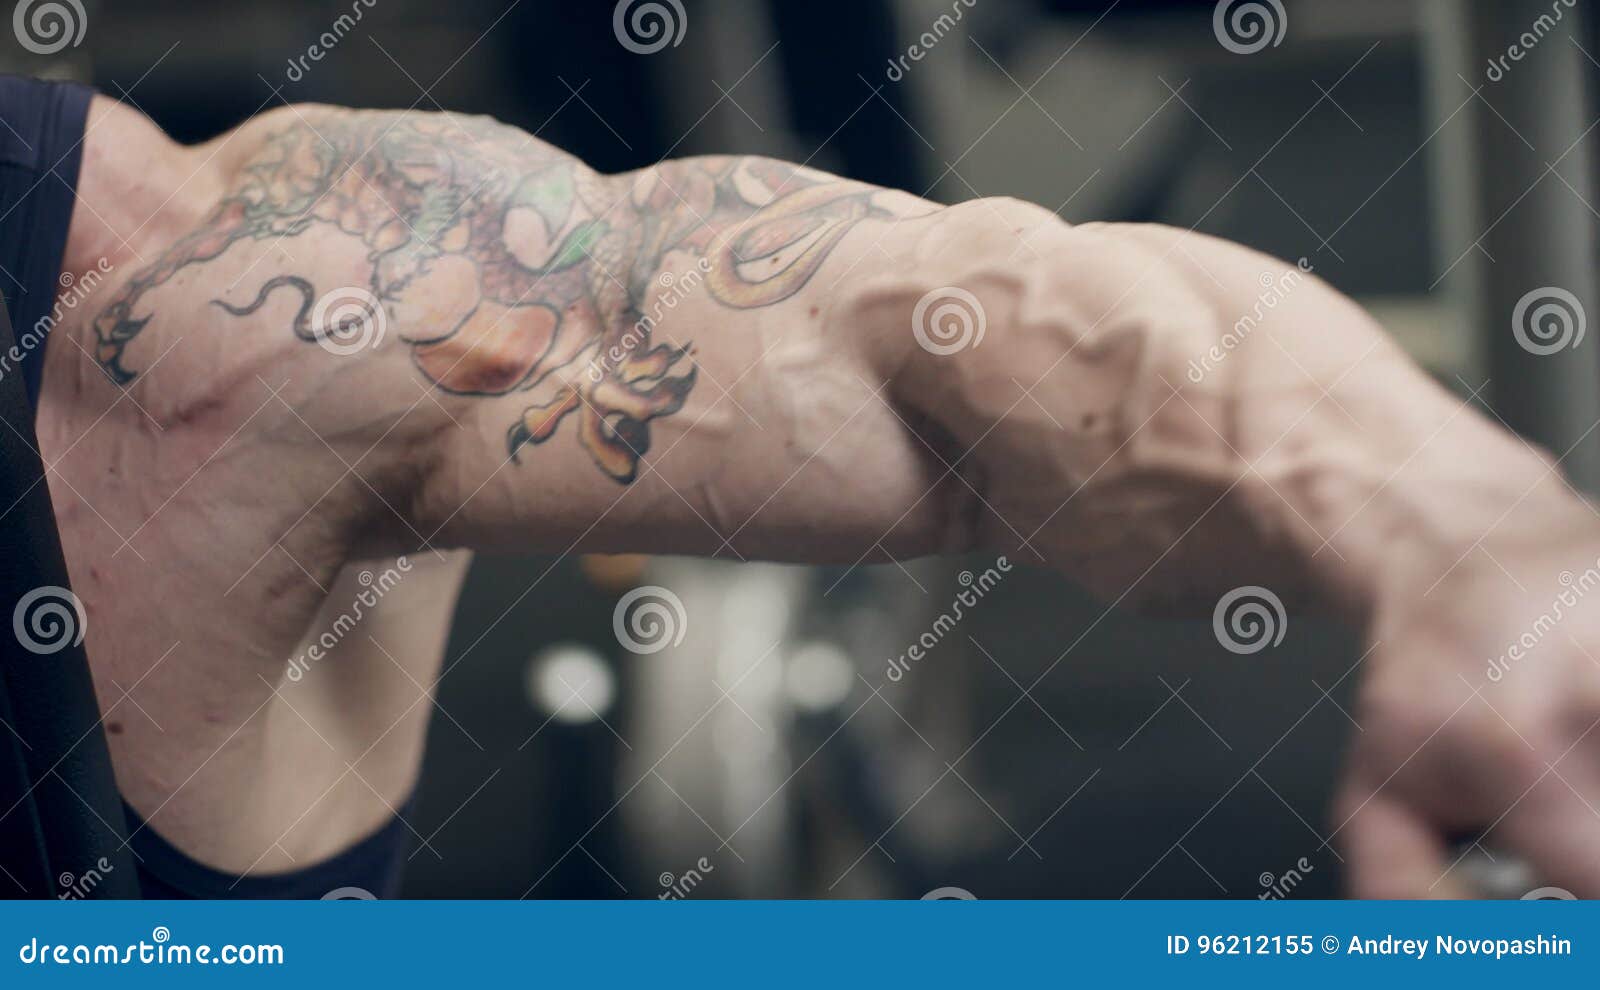 Biceps Heart tattoo - Best Tattoo Ideas Gallery